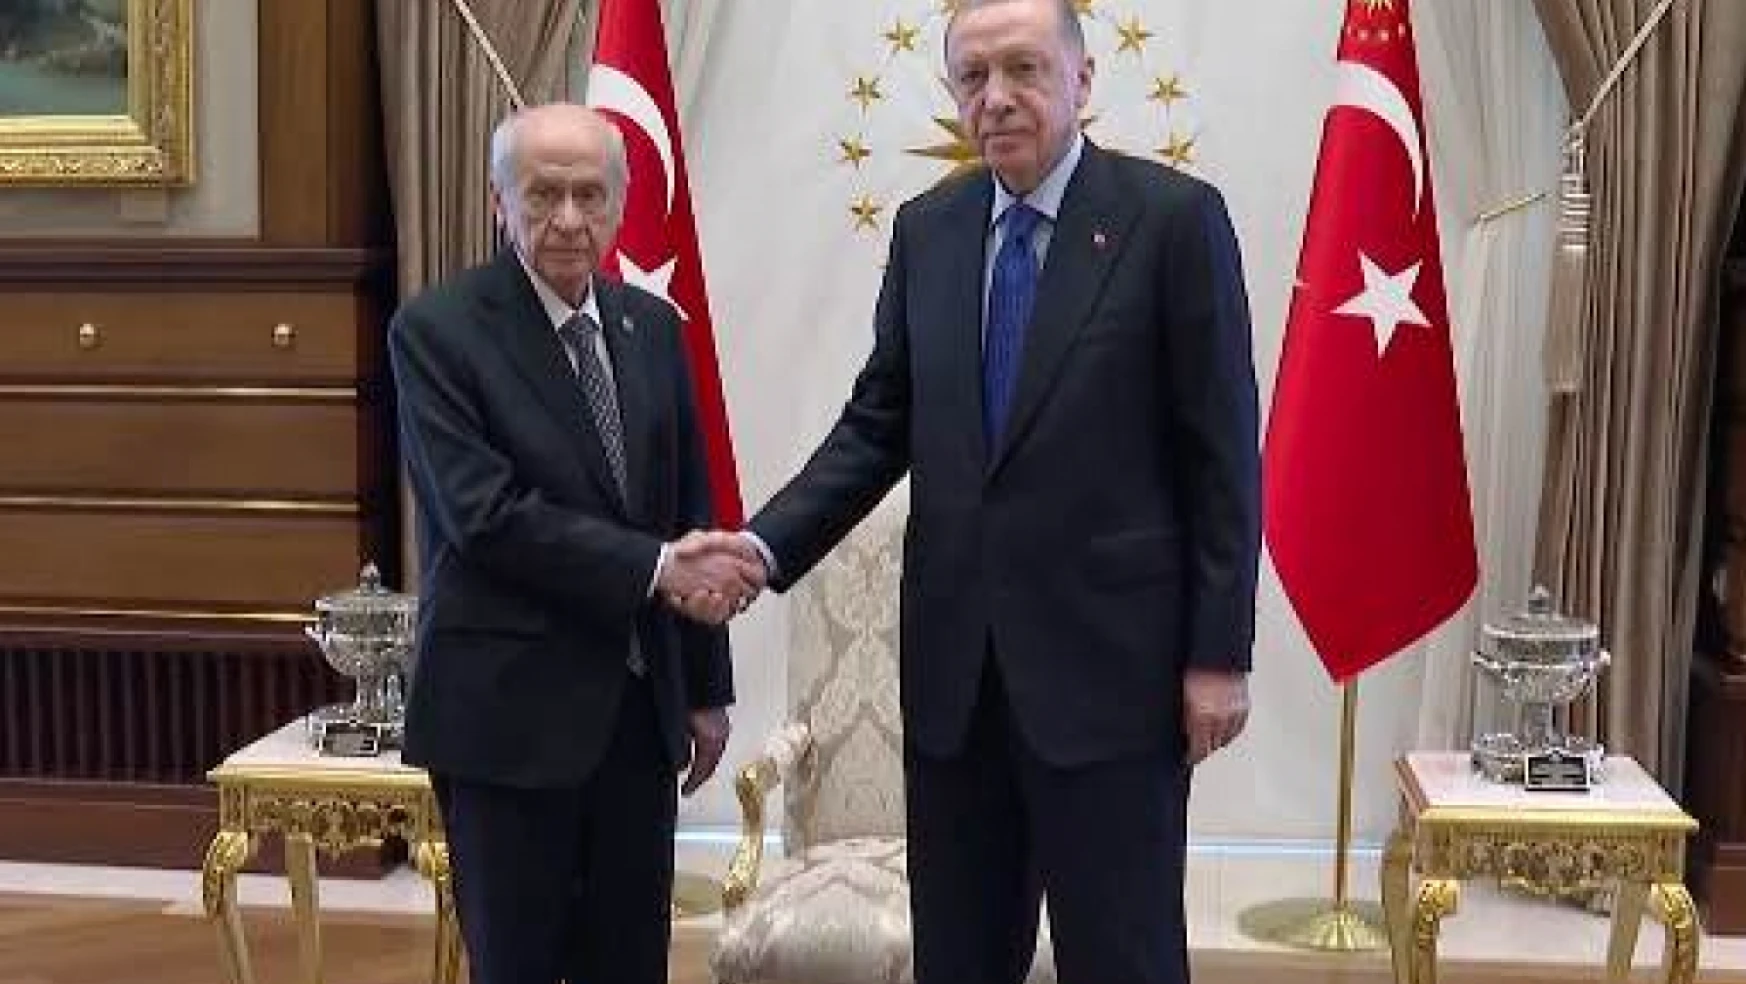 Cumhurbaşkanı Erdoğan ile Bahçeli 1 saat görüştü